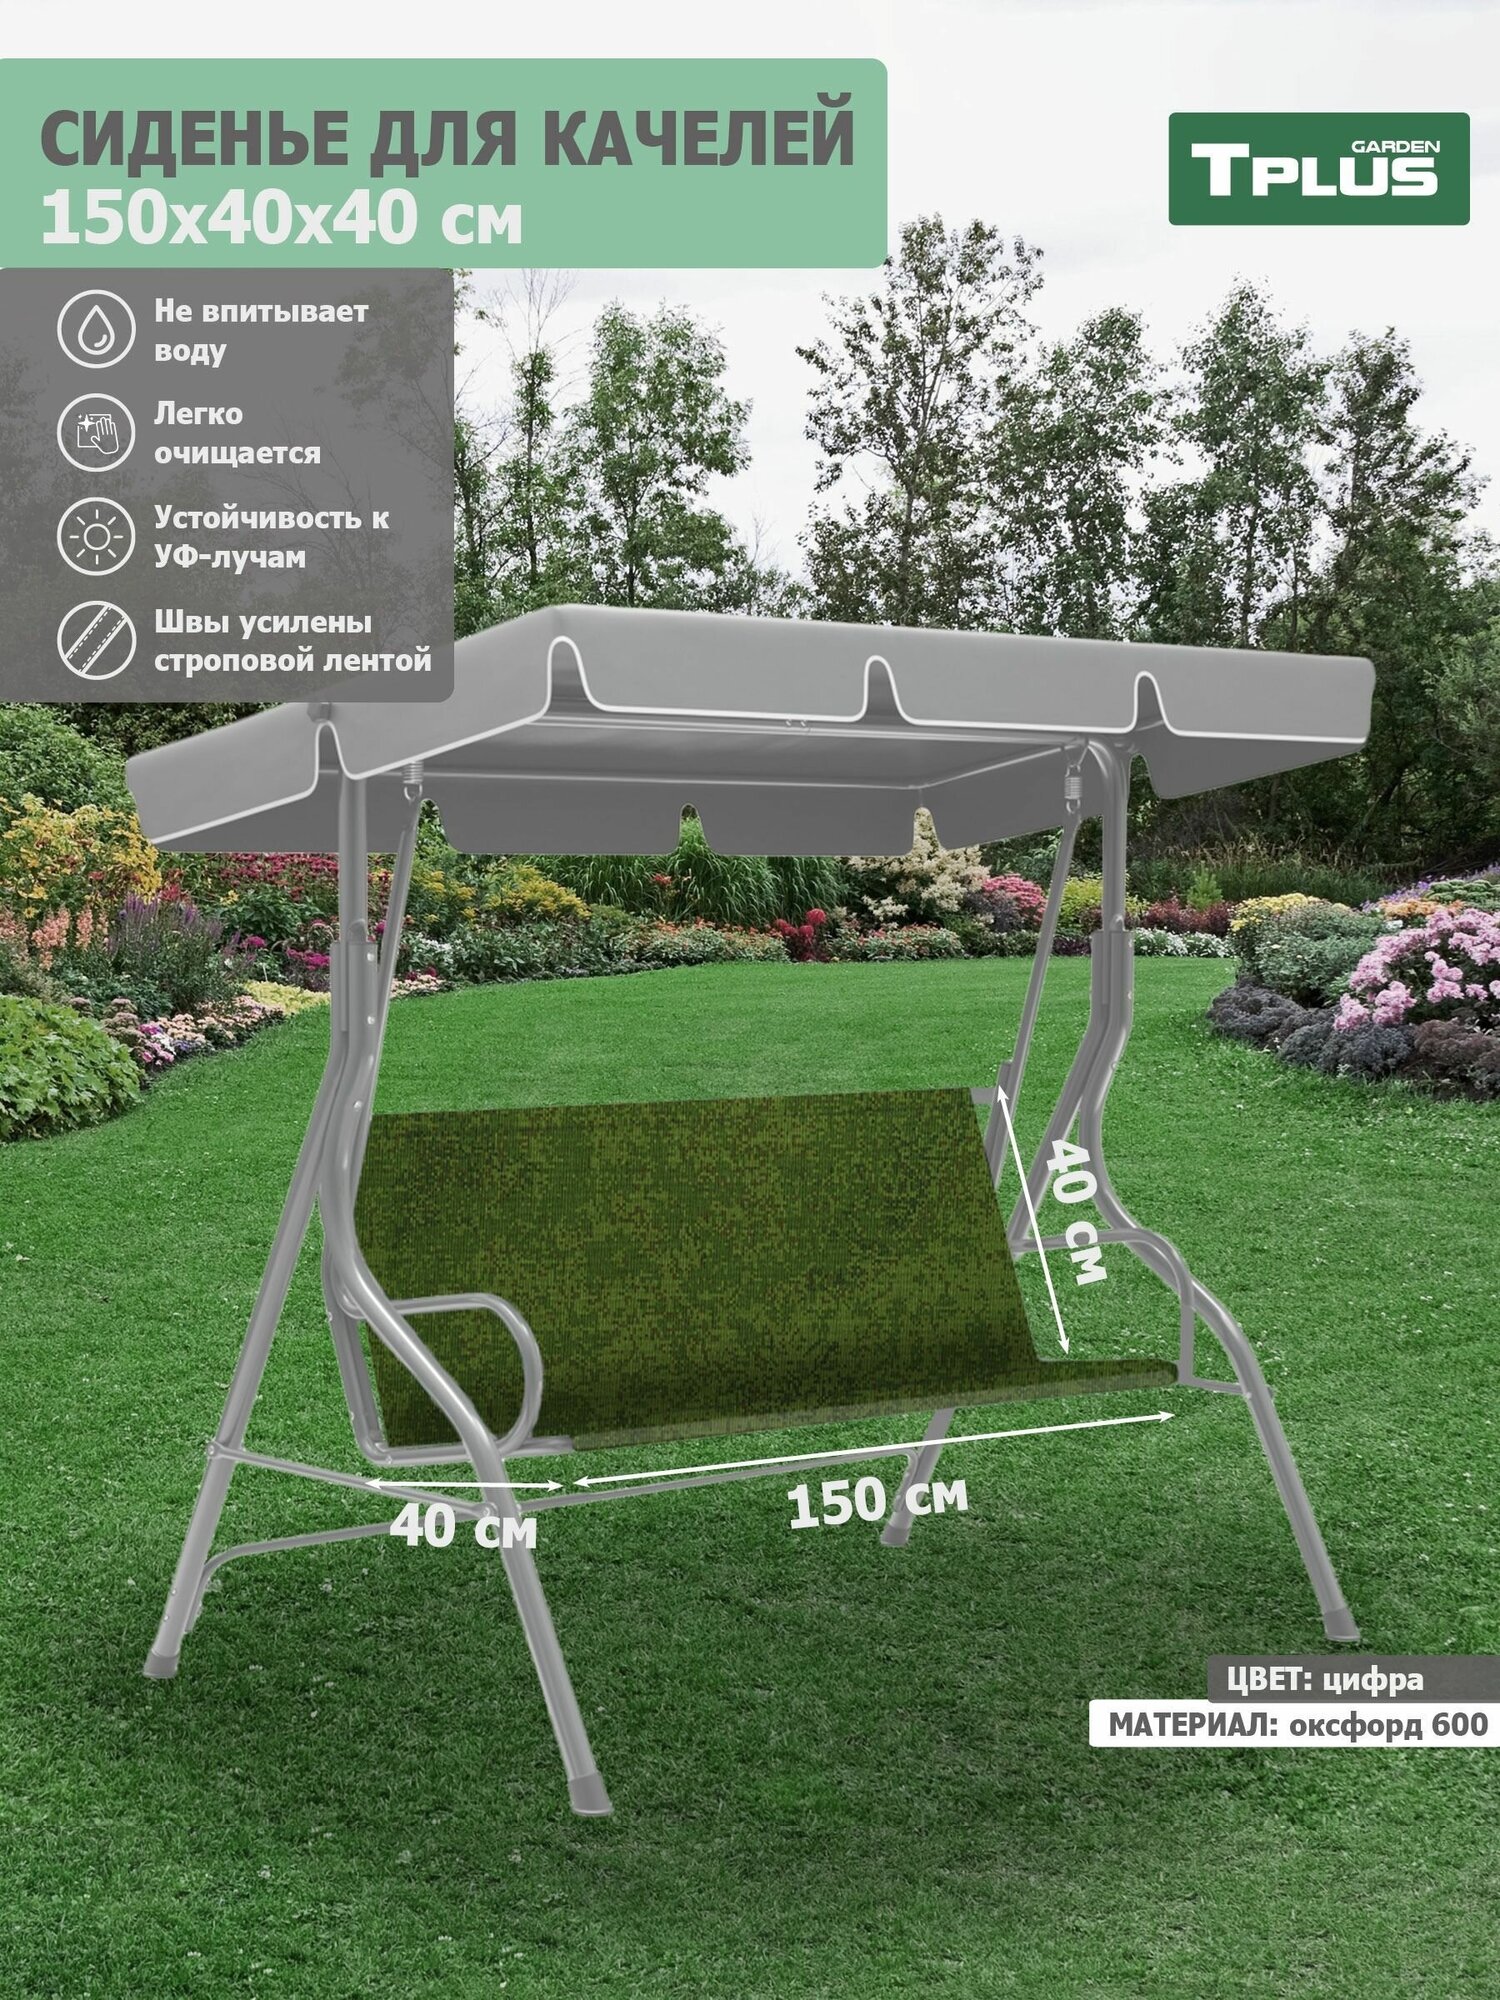 Сиденье для качелей садовых 1500x400/400 мм. (оксфорд 600, цифра), Tplus - фотография № 1